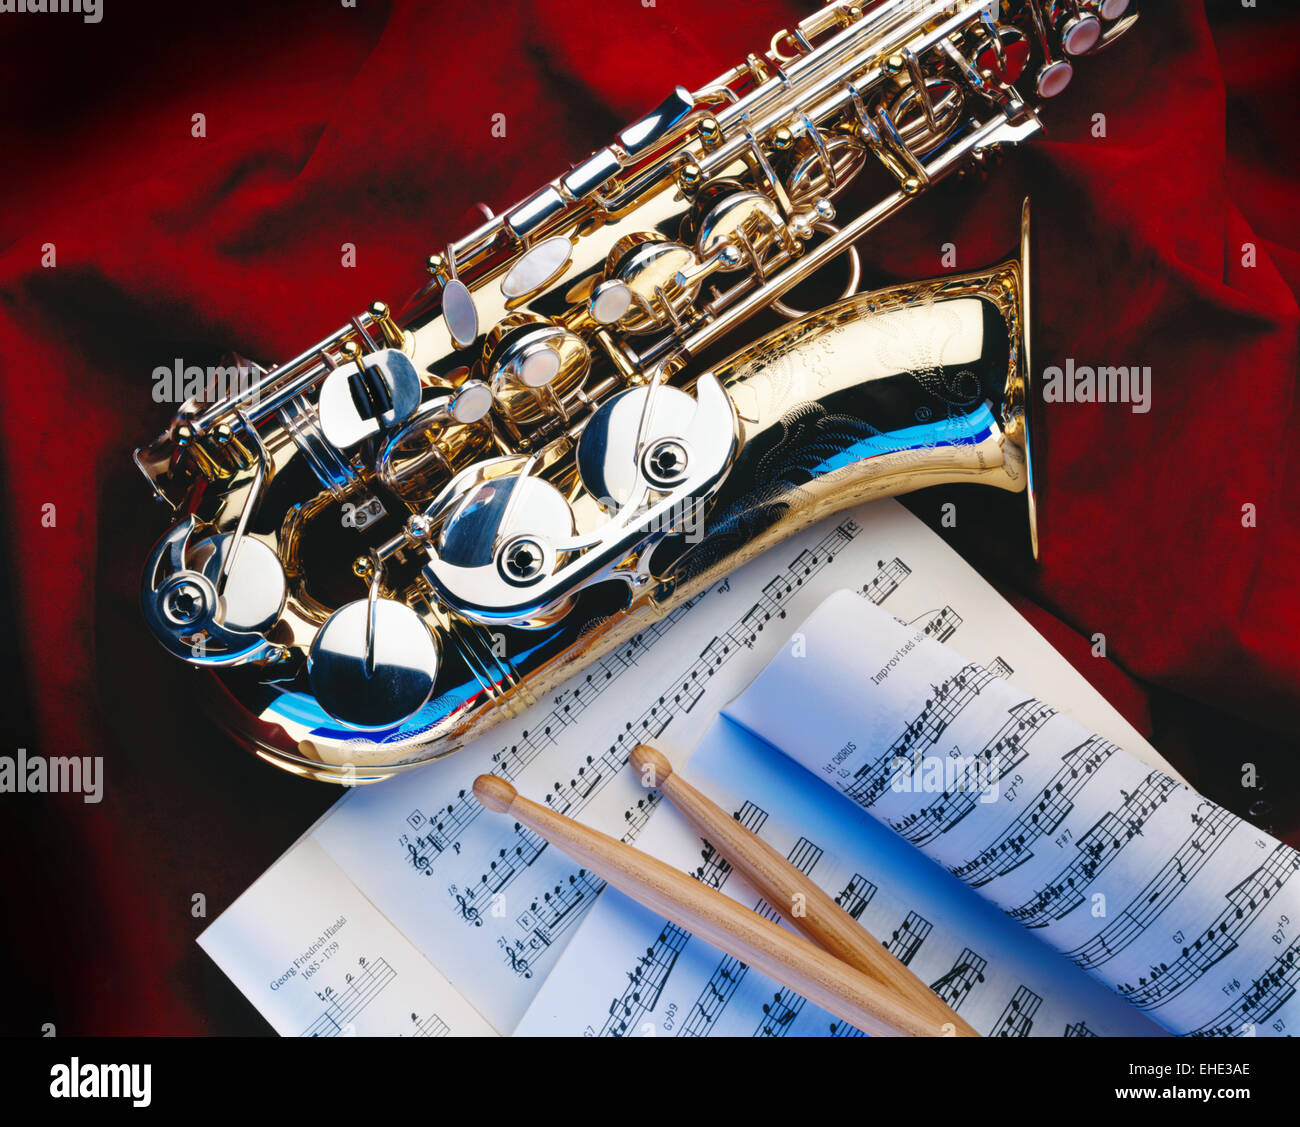 Saxophone Stock Photo